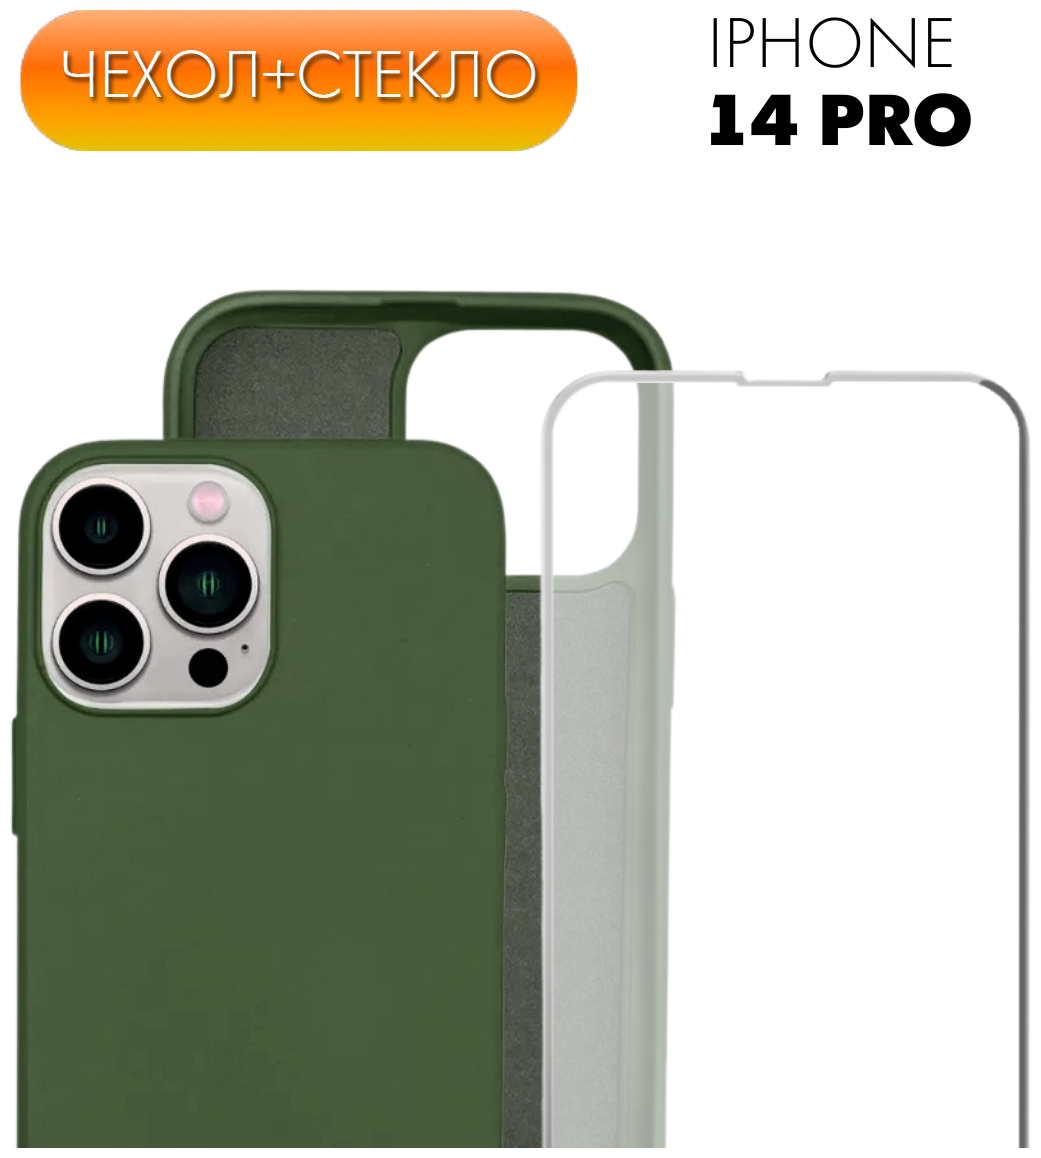 Комплект 2 в 1: Защитный матовый чехол №64 Silicone Case + защитное стекло для Apple iPhone 14 Pro (Эпл Айфон 14 Про). Накладка противоударная